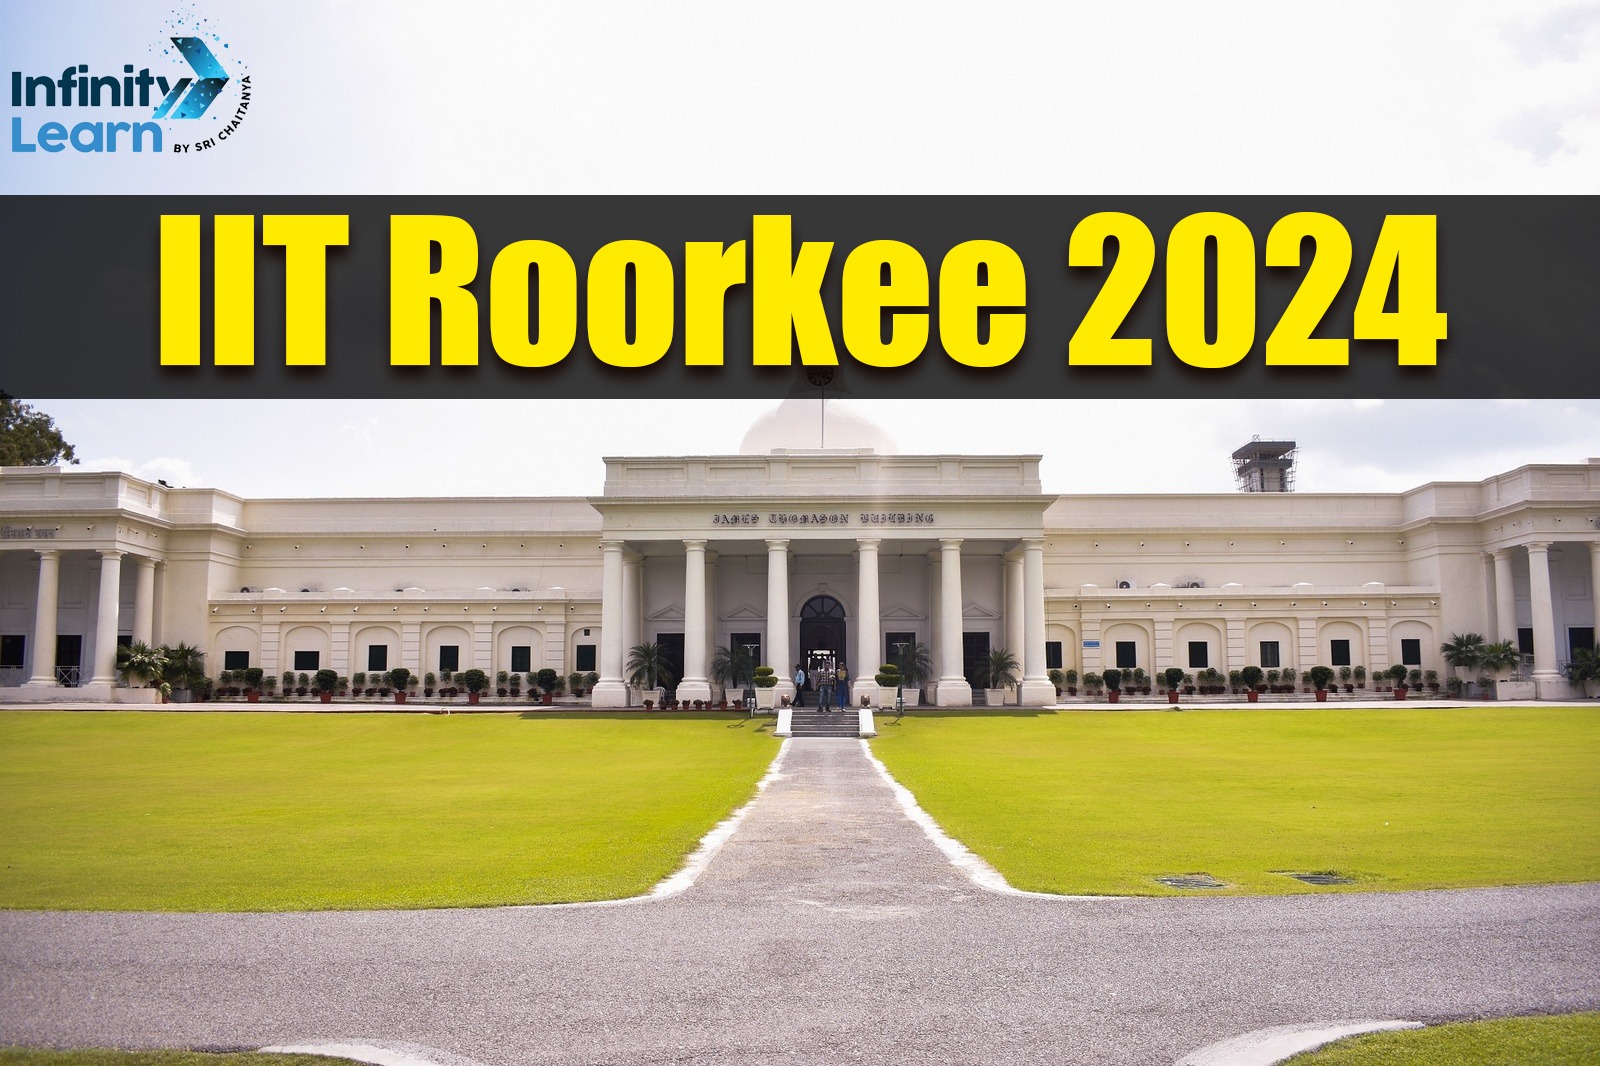 IIT Roorkee 2024